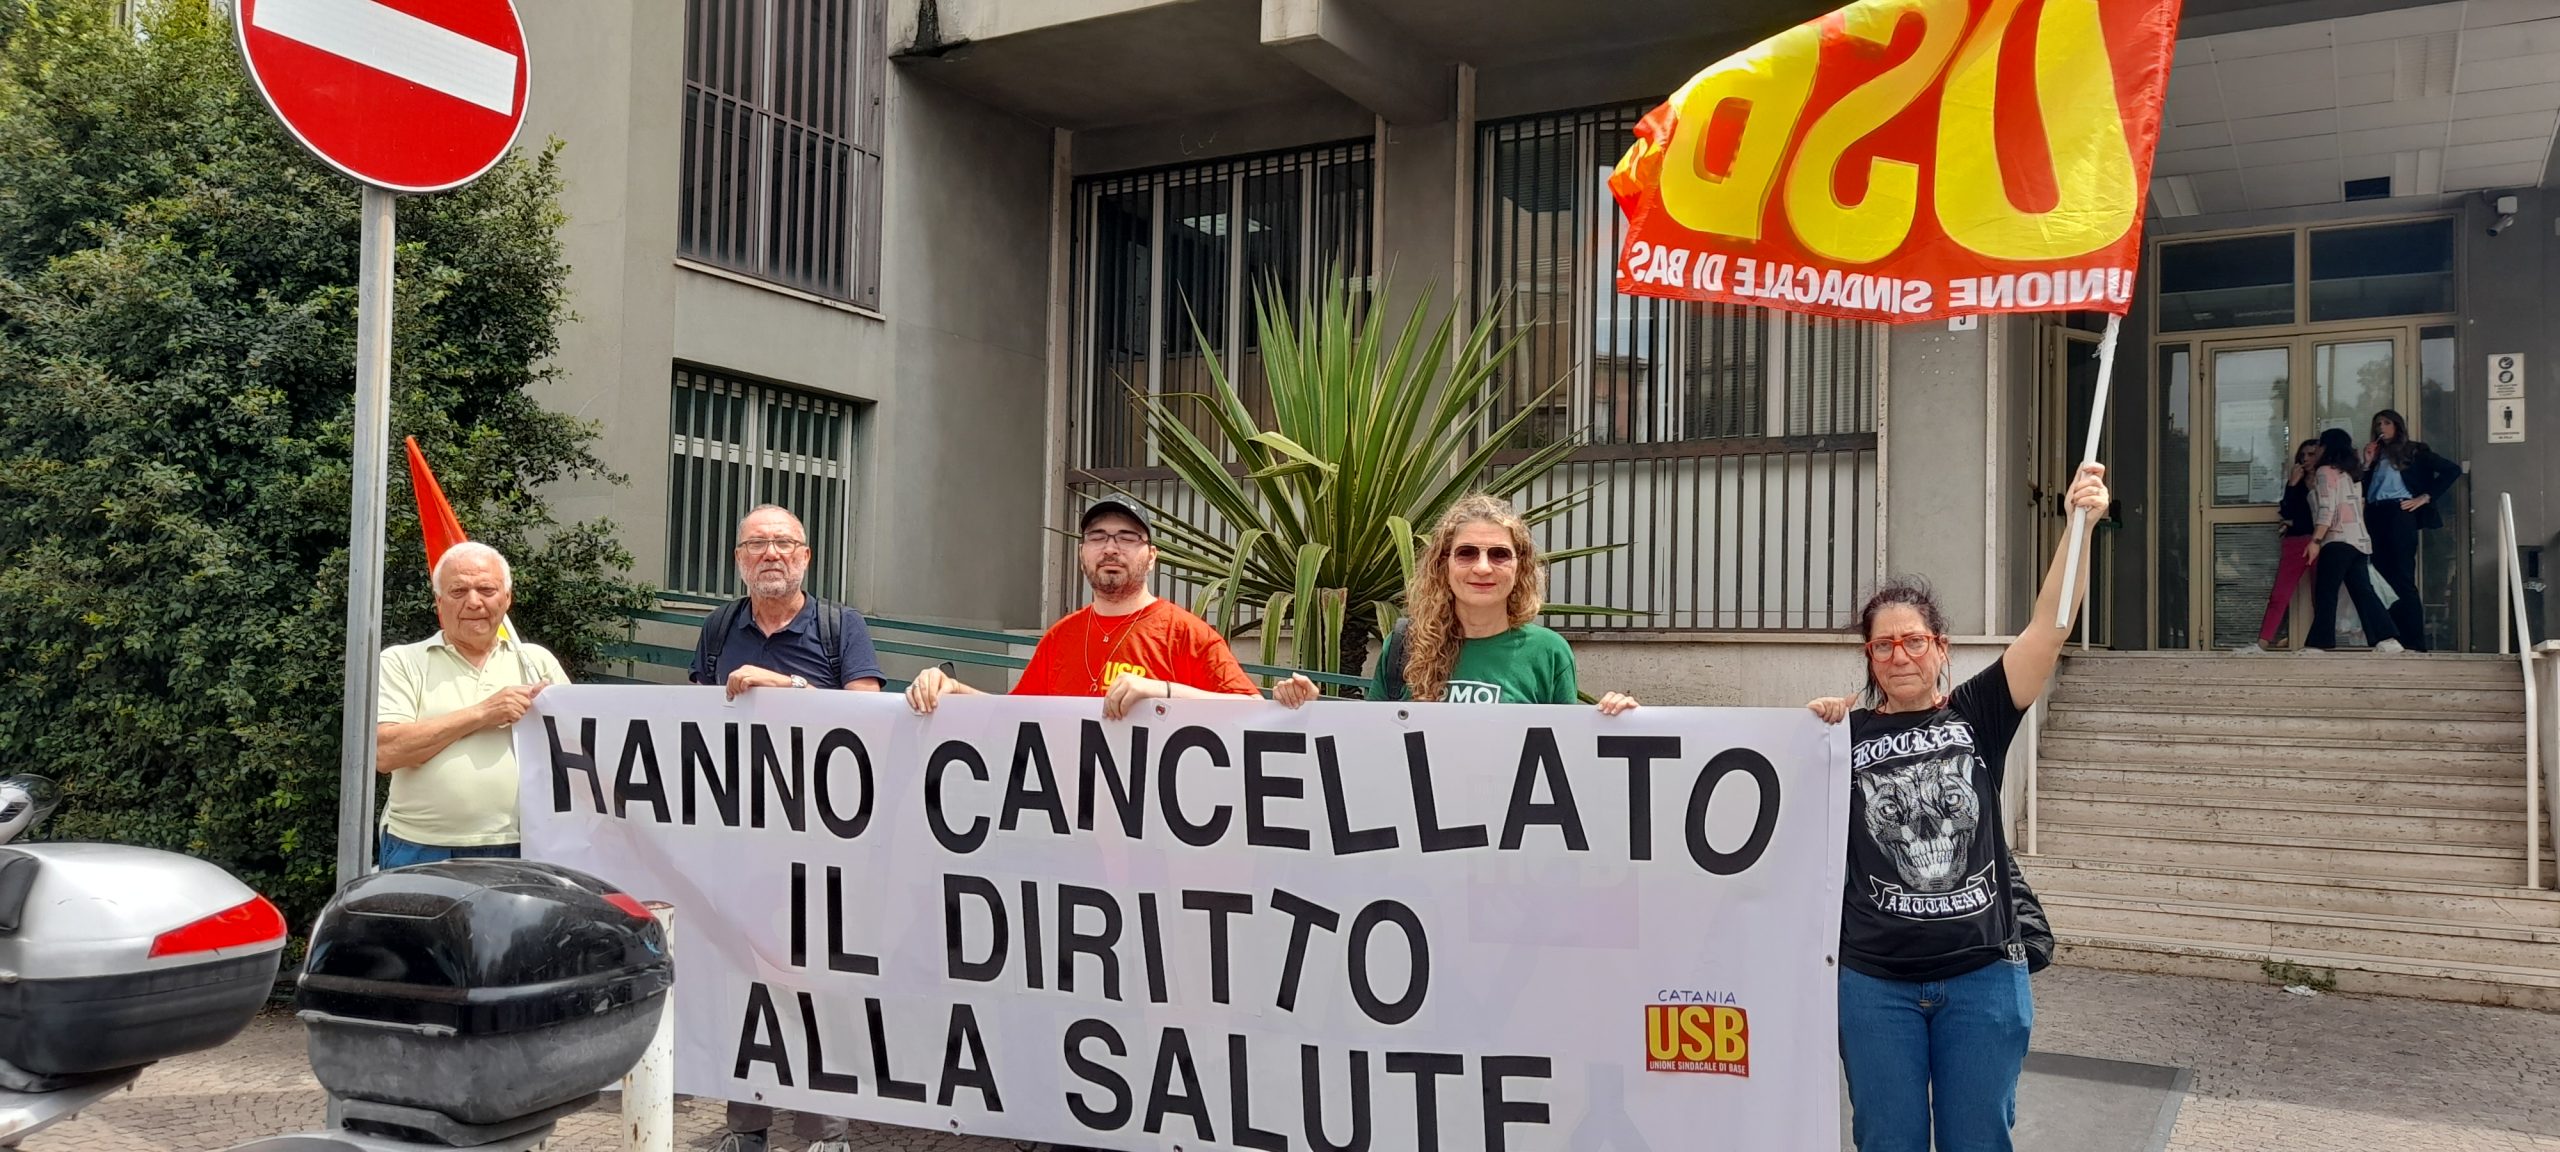 Anche Catania manifesta per il diritto alla salute “cancellato”